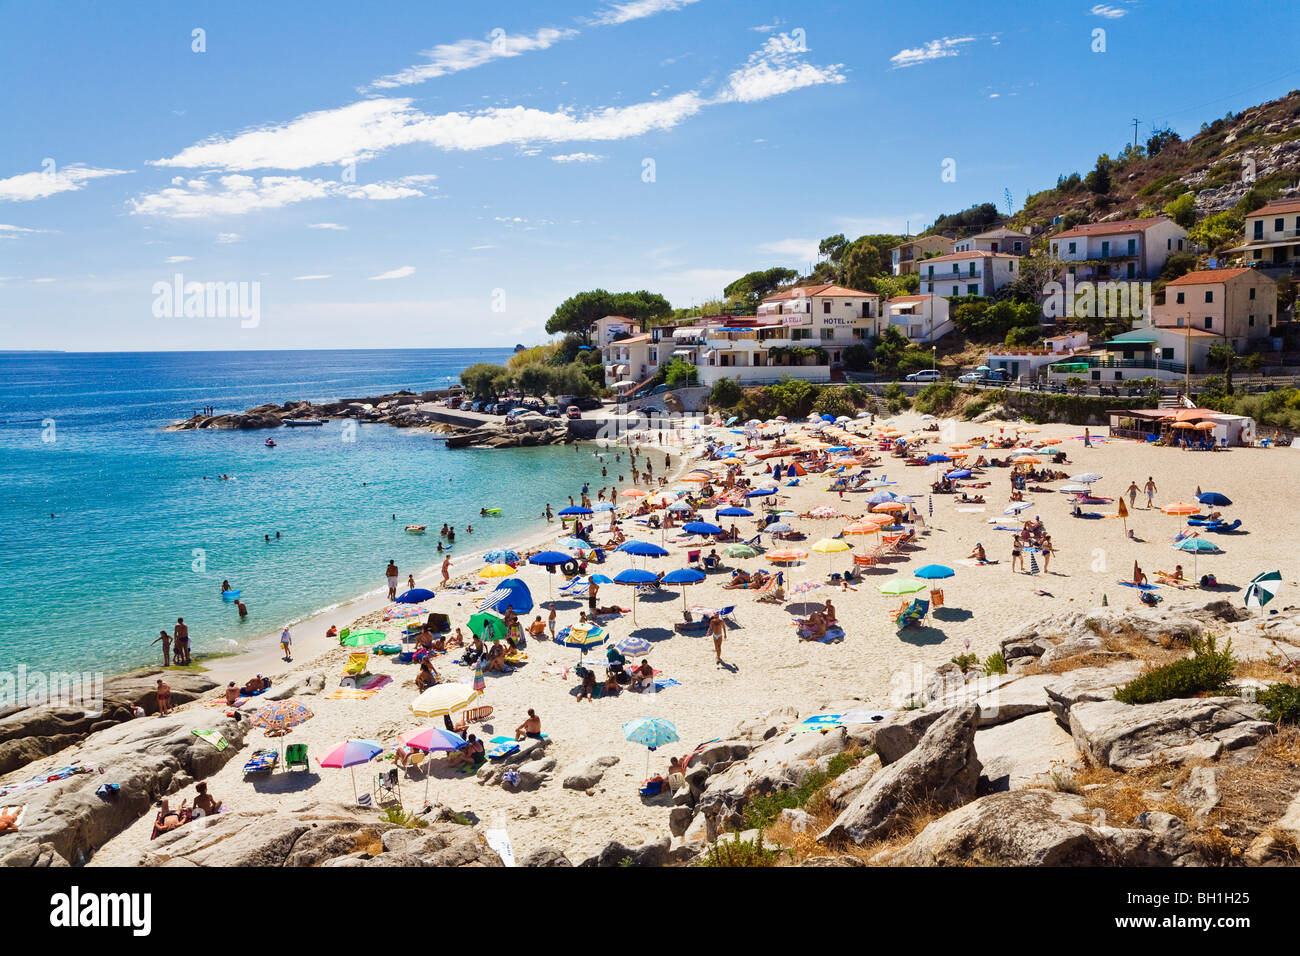 Beach at Seccheto, Elba, Italy Stock Photo: 27694861 - Alamy